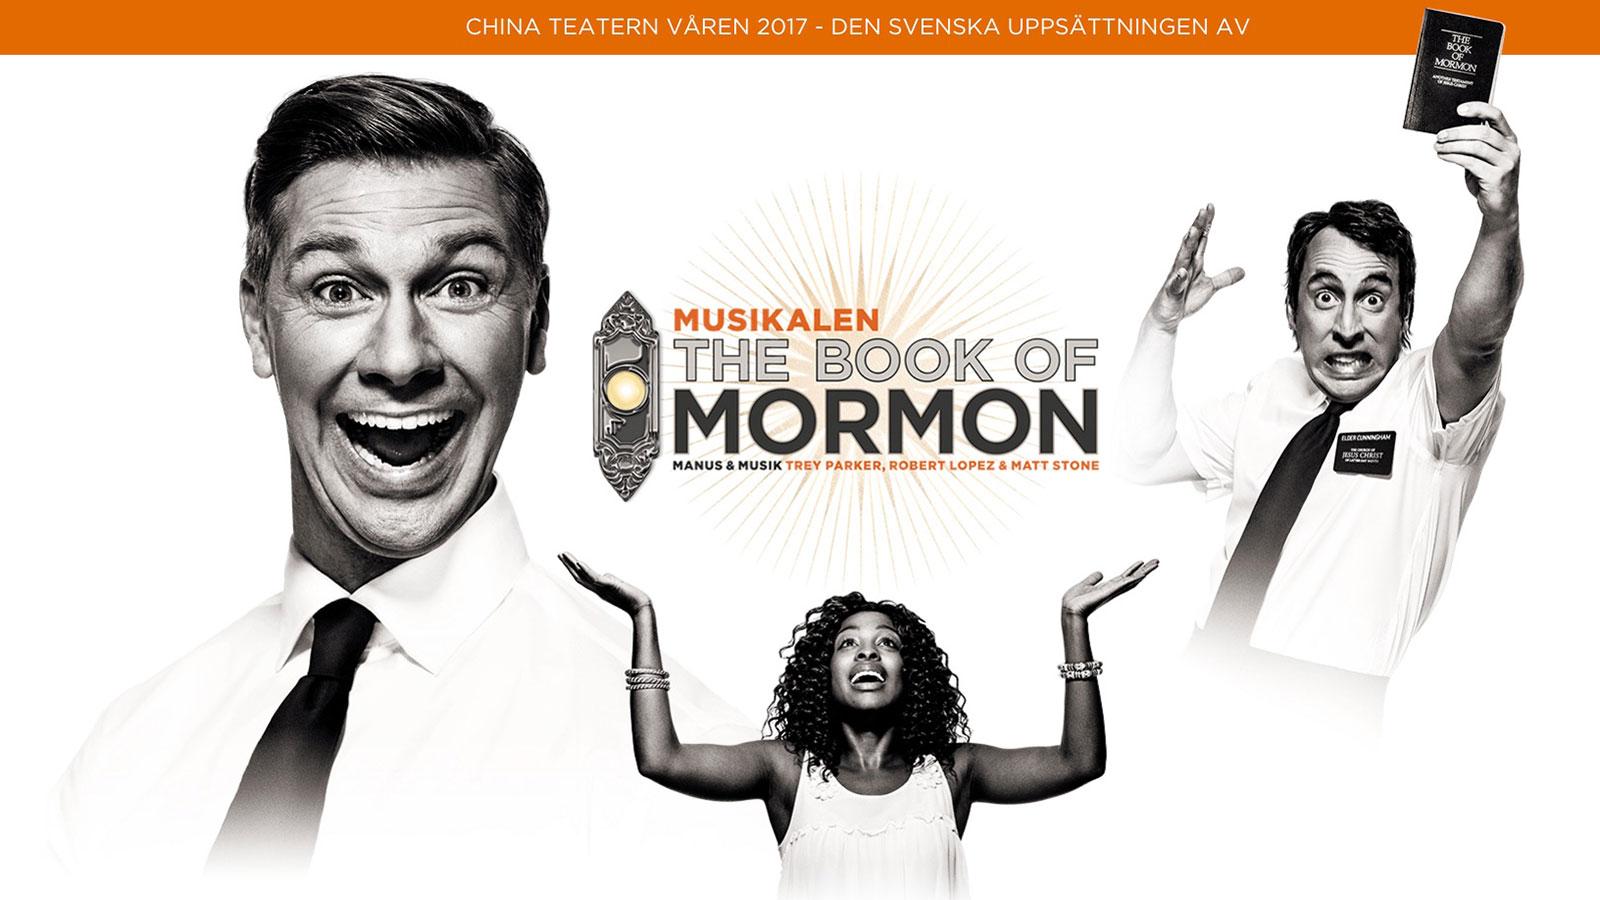 Nu kommer den svenska uppsättningen av ”The book of mormon” på Chinateatern i Stockholm.